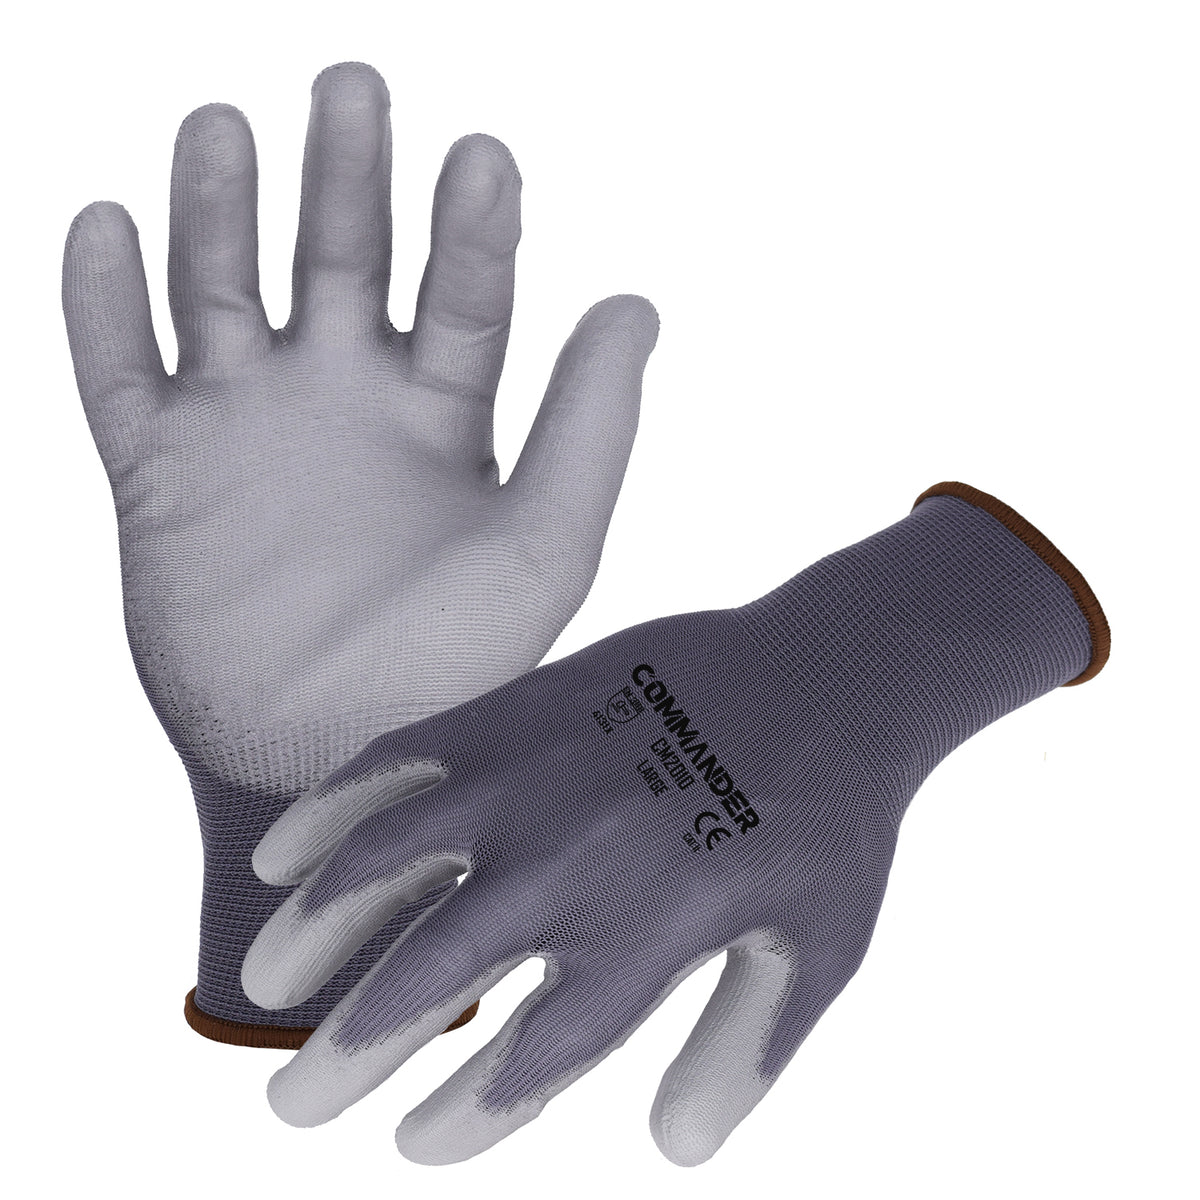 Gloves – Azusasafety Work Coated